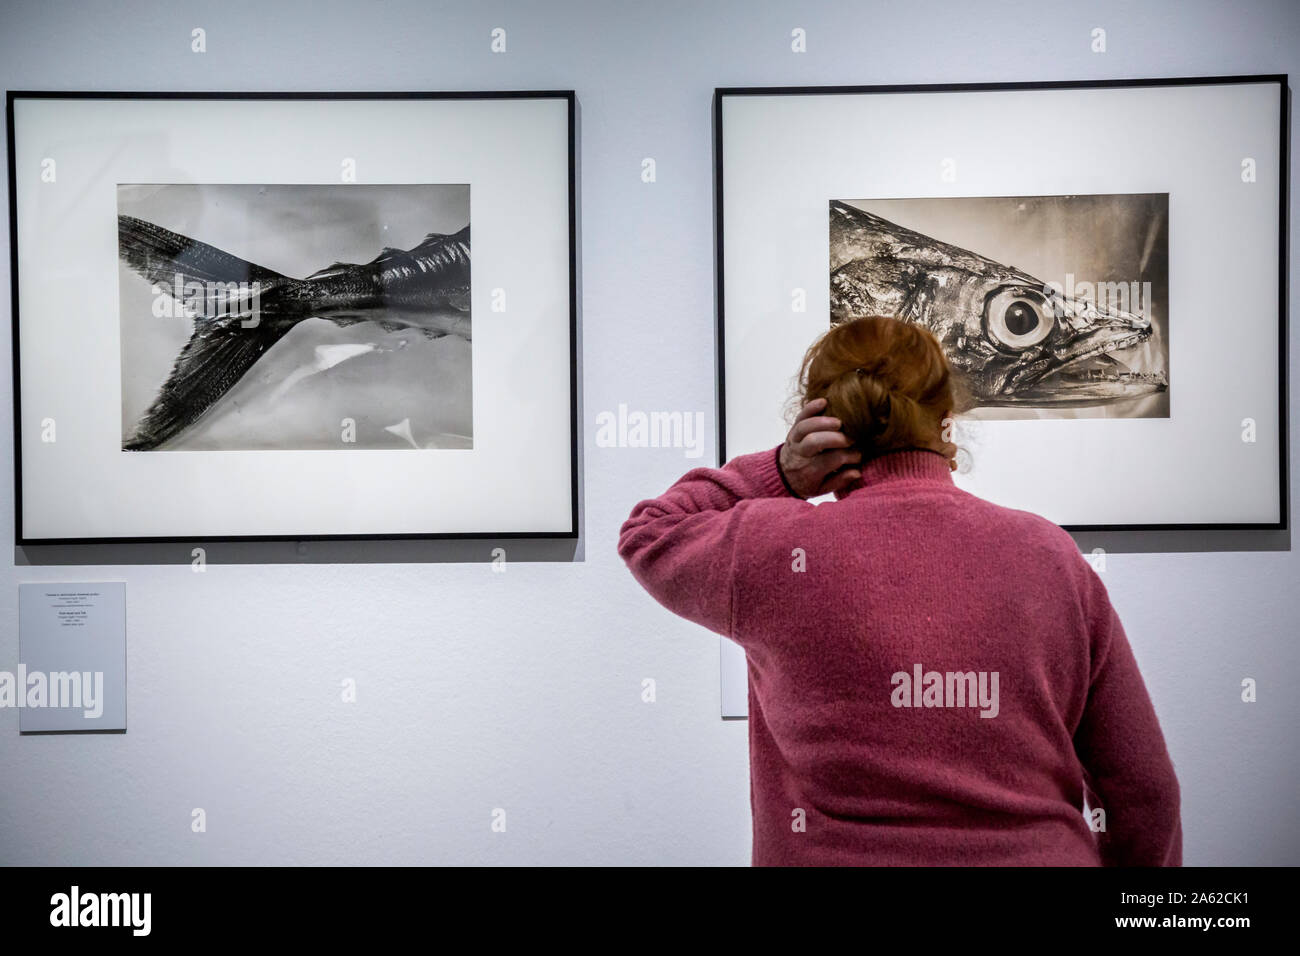 Une femme regarde les œuvres à l'exposition 'La photographie et science" de la photographe Berenice Abbott dans le Multimedia Art Museum de Moscou, Russie Banque D'Images